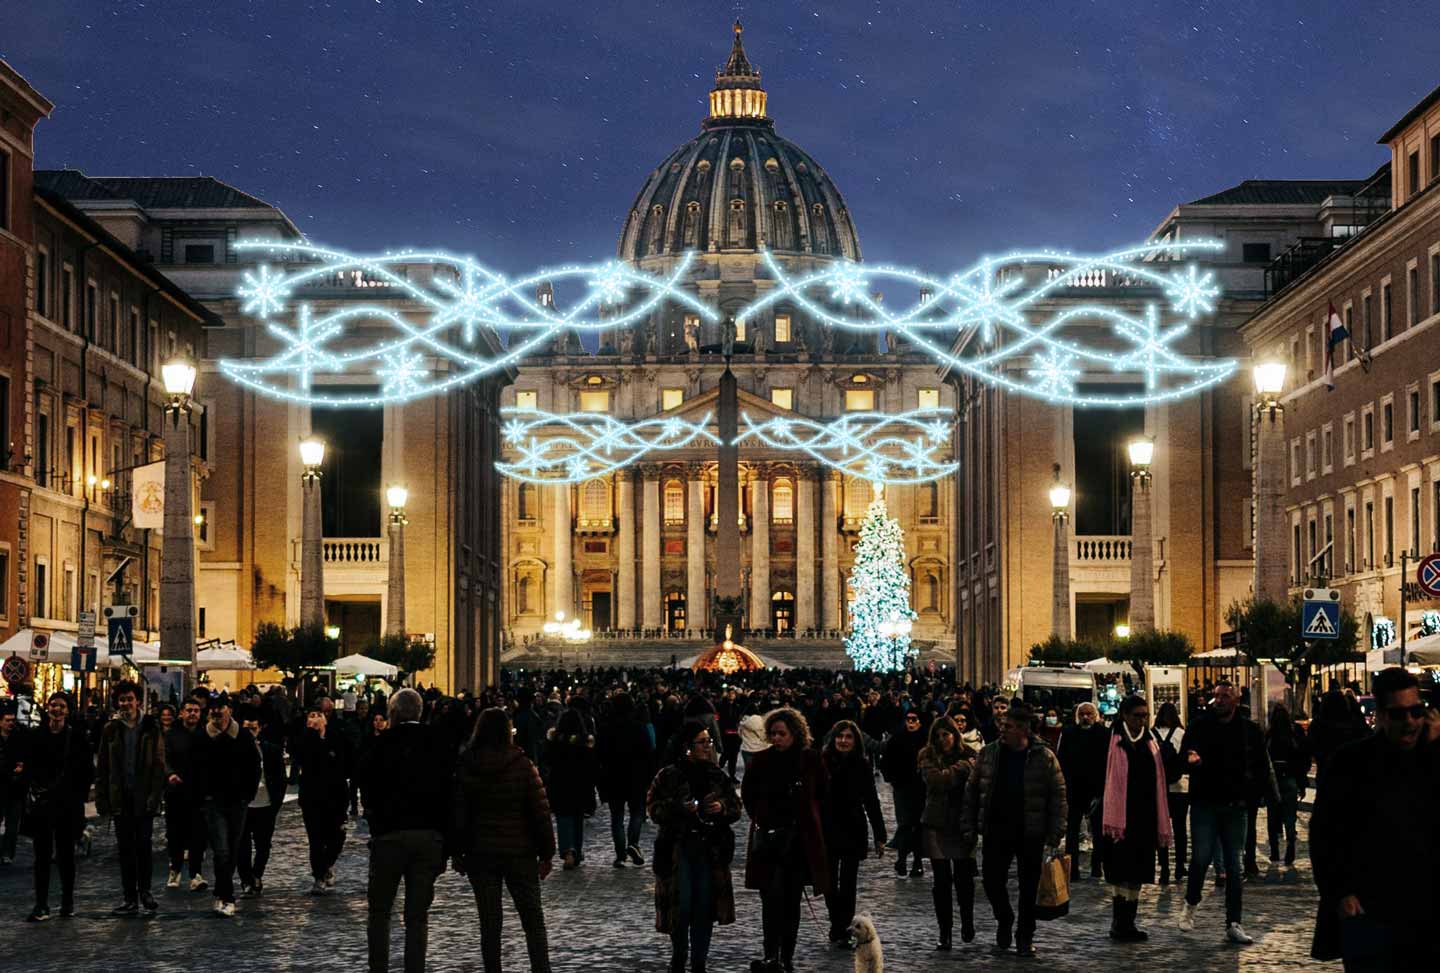 Immagine di una piazza con soggetti natalizi luminosi a forma di Rami